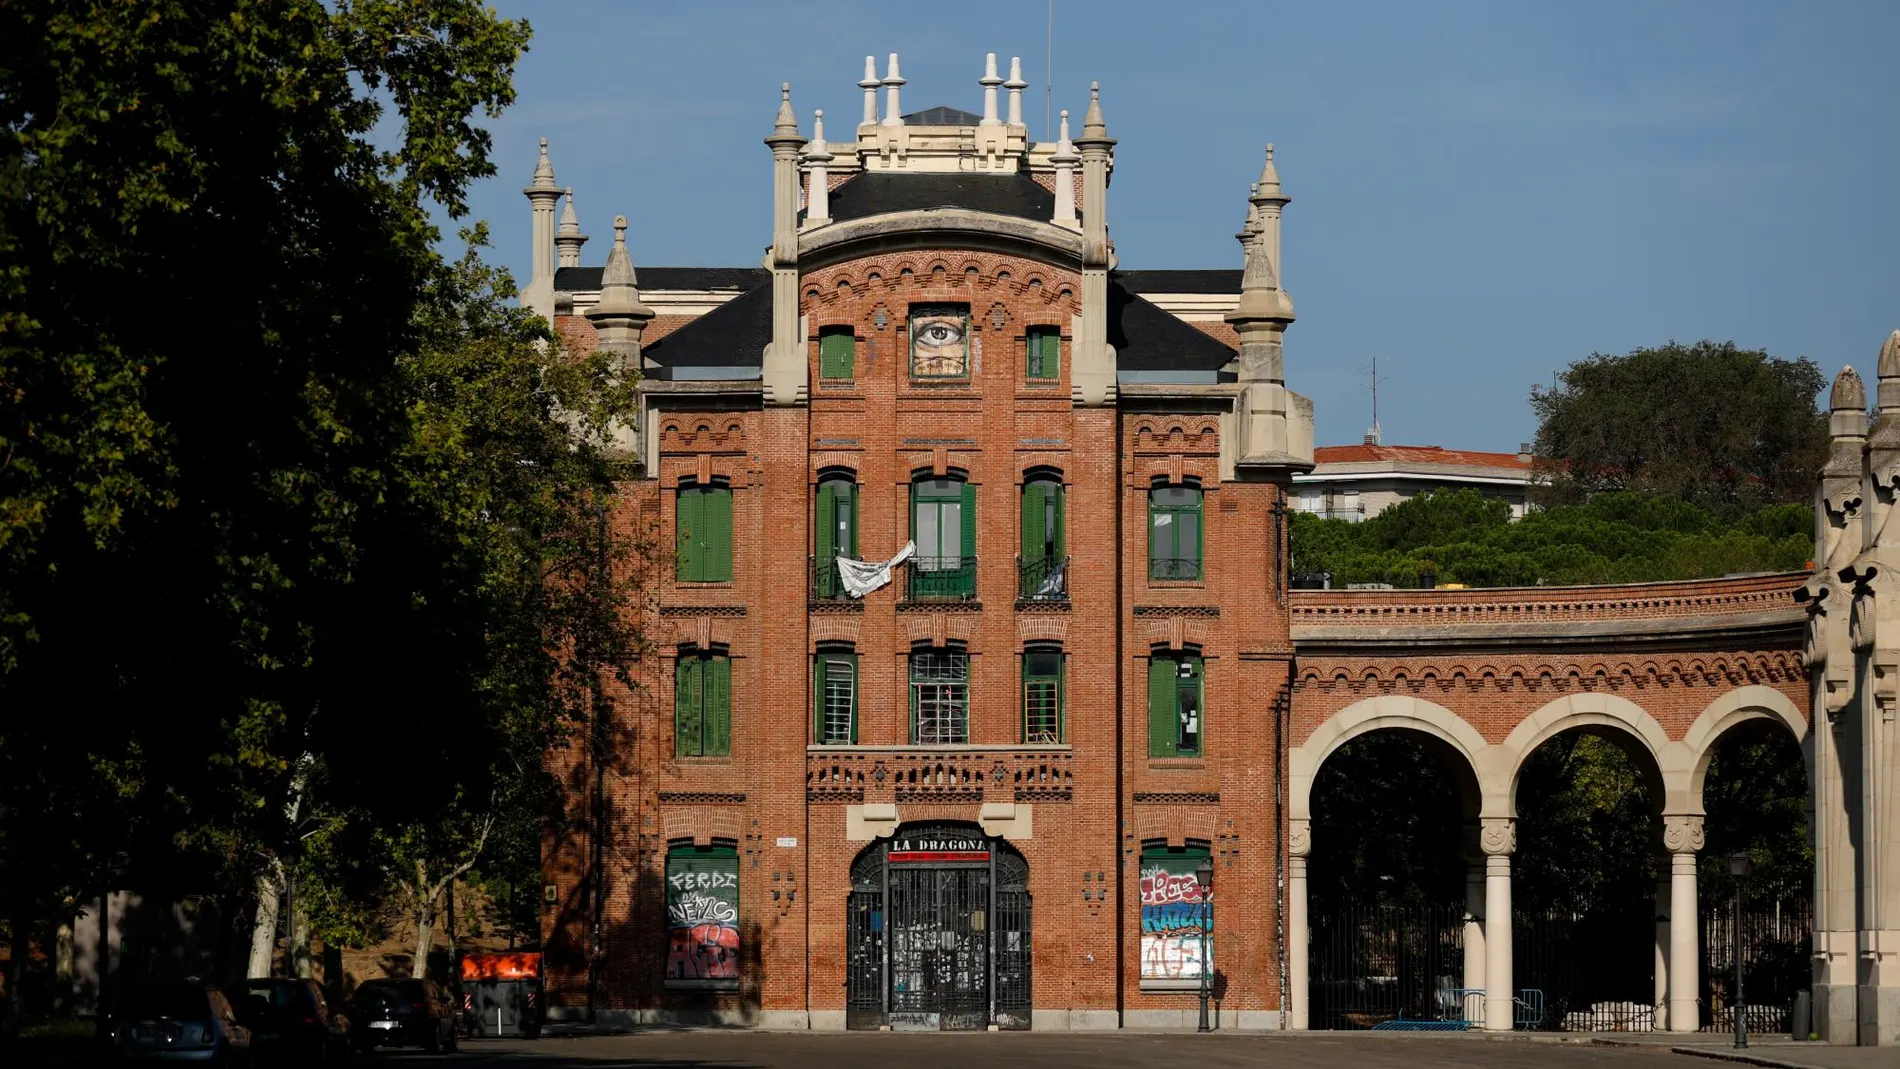 Edificio okupado La Dragona en el cementerio de La Almudena de Madrid